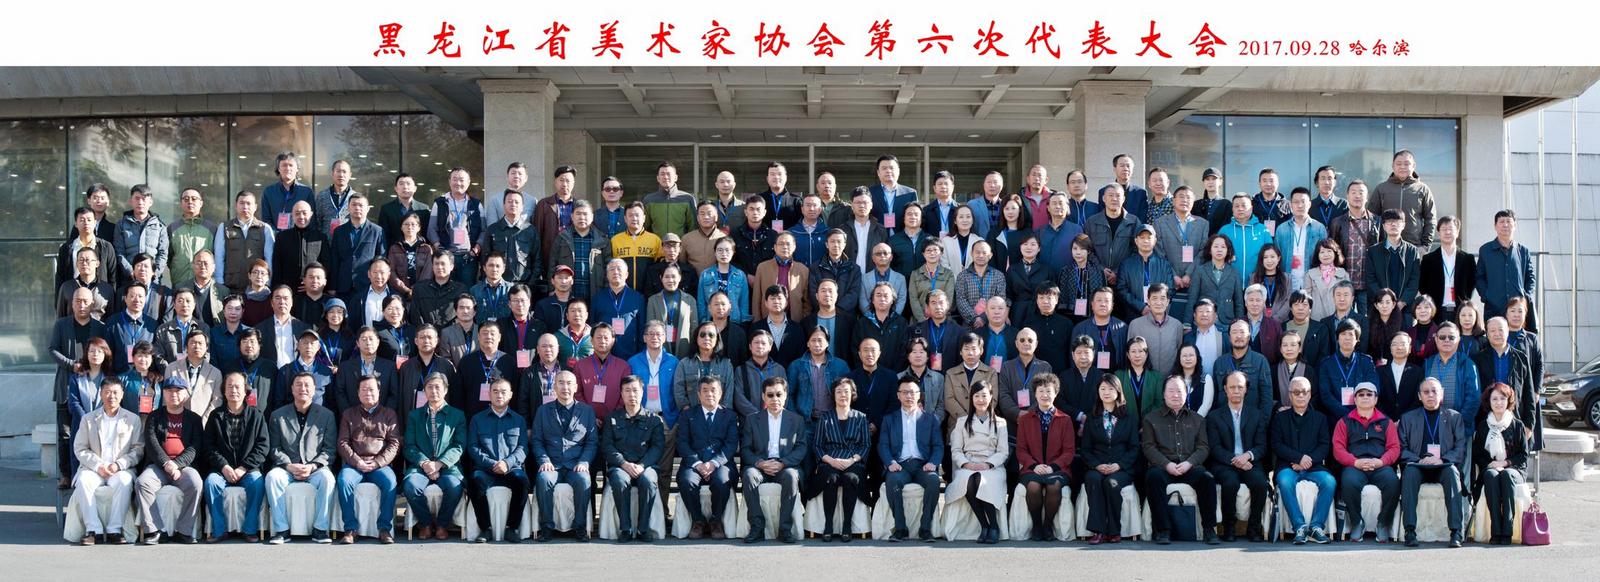 黑龙江省美协最新主席团和理事成员名单